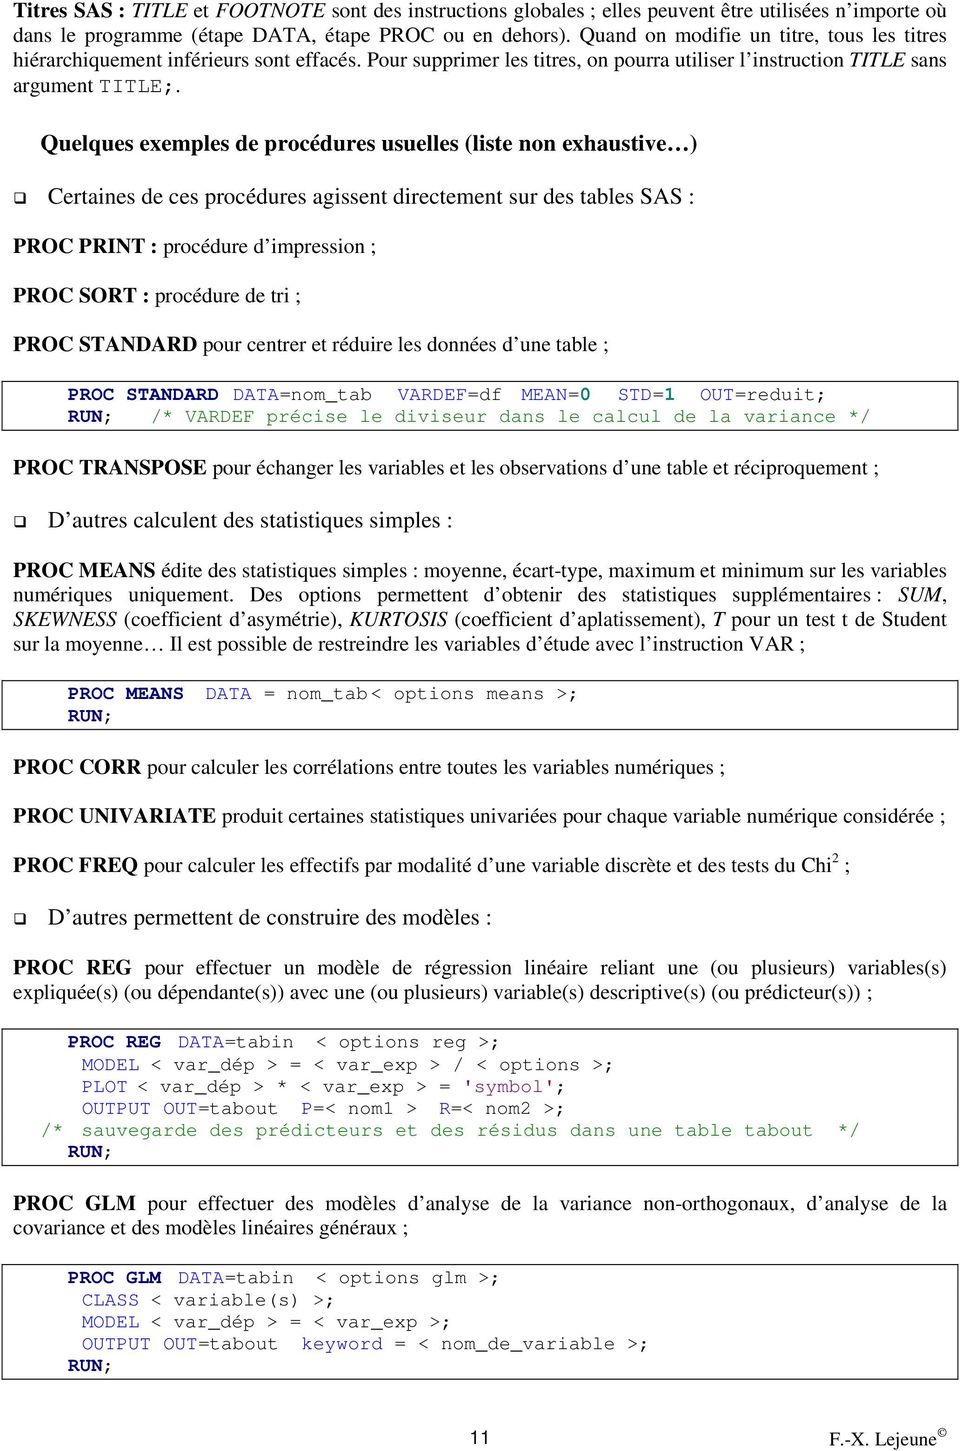 Quelques exemples de procédures usuelles (liste non exhaustive ) Certaines de ces procédures agissent directement sur des tables SAS : PROC PRINT : procédure d impression ; PROC SORT : procédure de